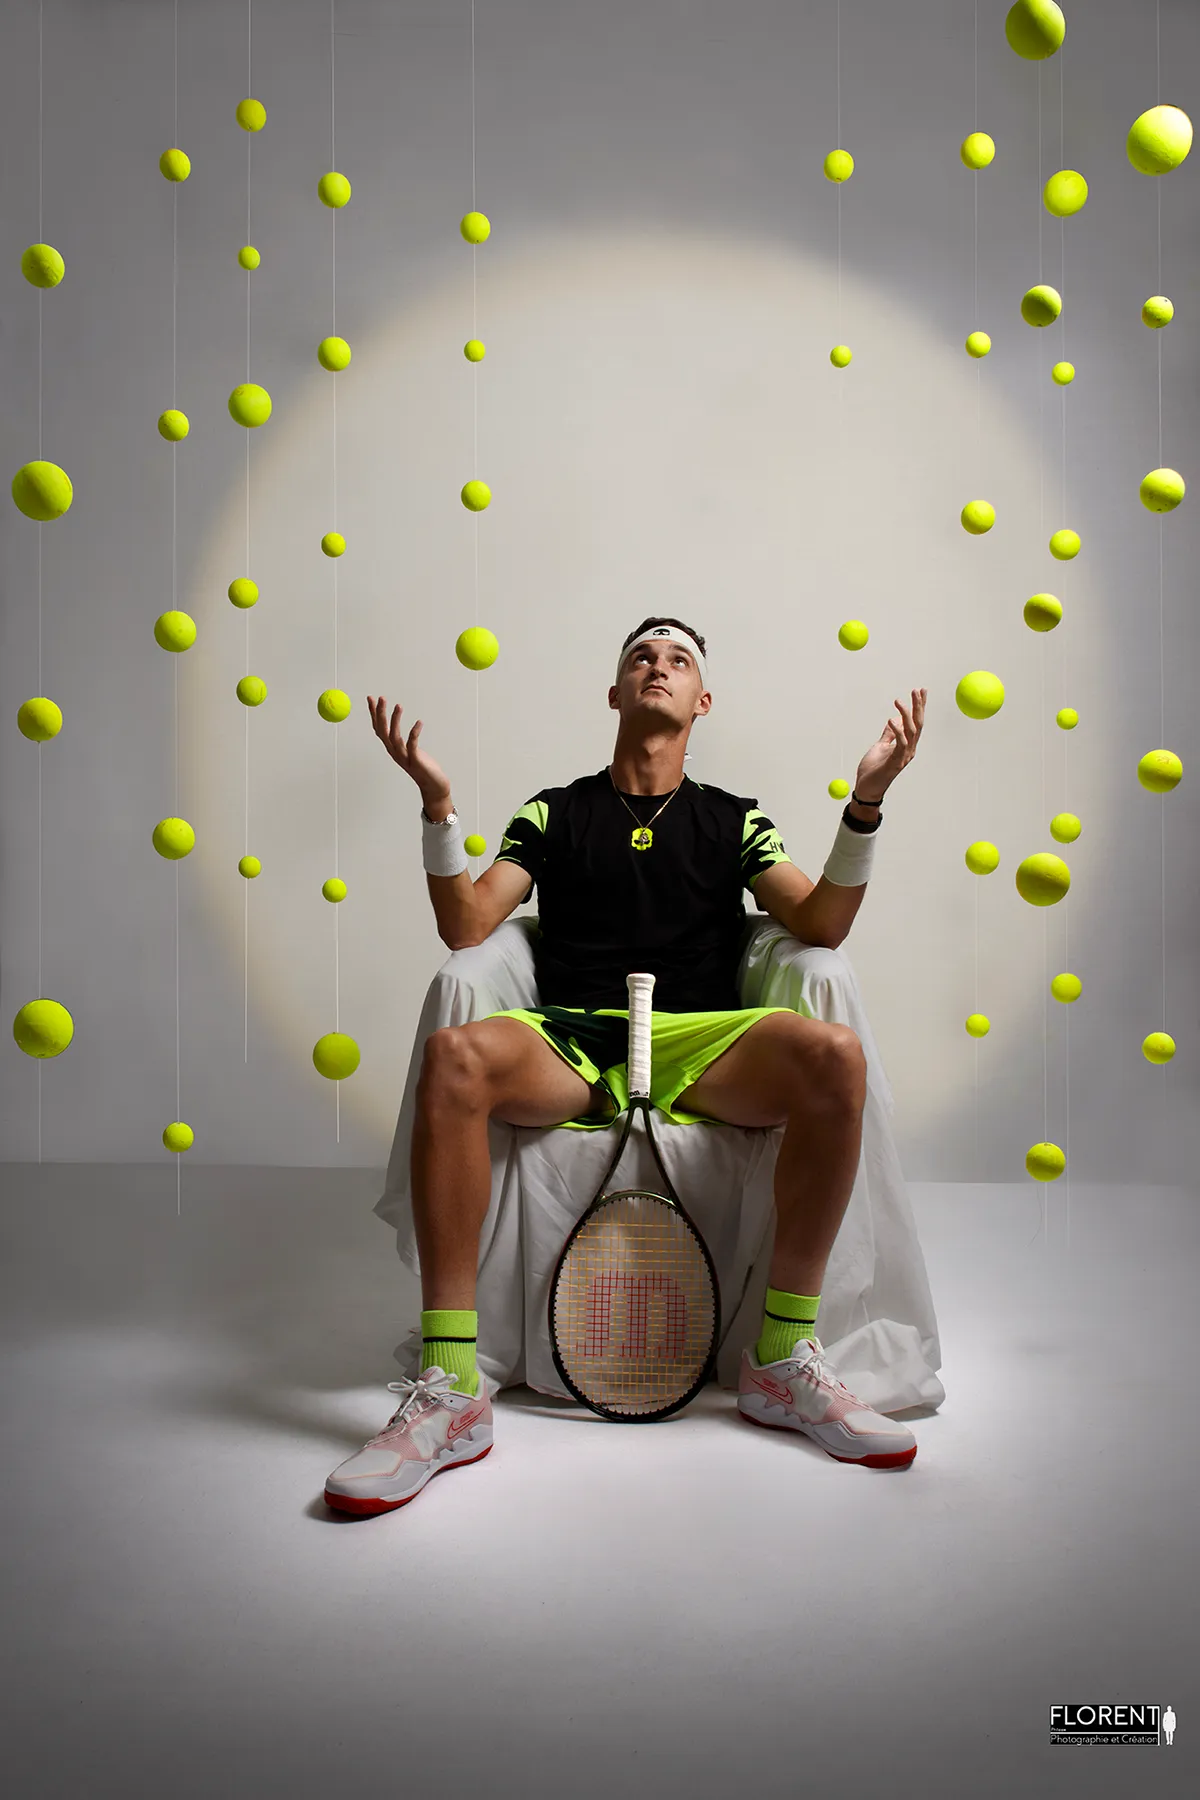 seance-book-joueur de tennis regarde les balles en suspension terence atmane-florent-fanie-photographe-boulogne-sur-mer-lille-le-touquet-paris-saint-omer